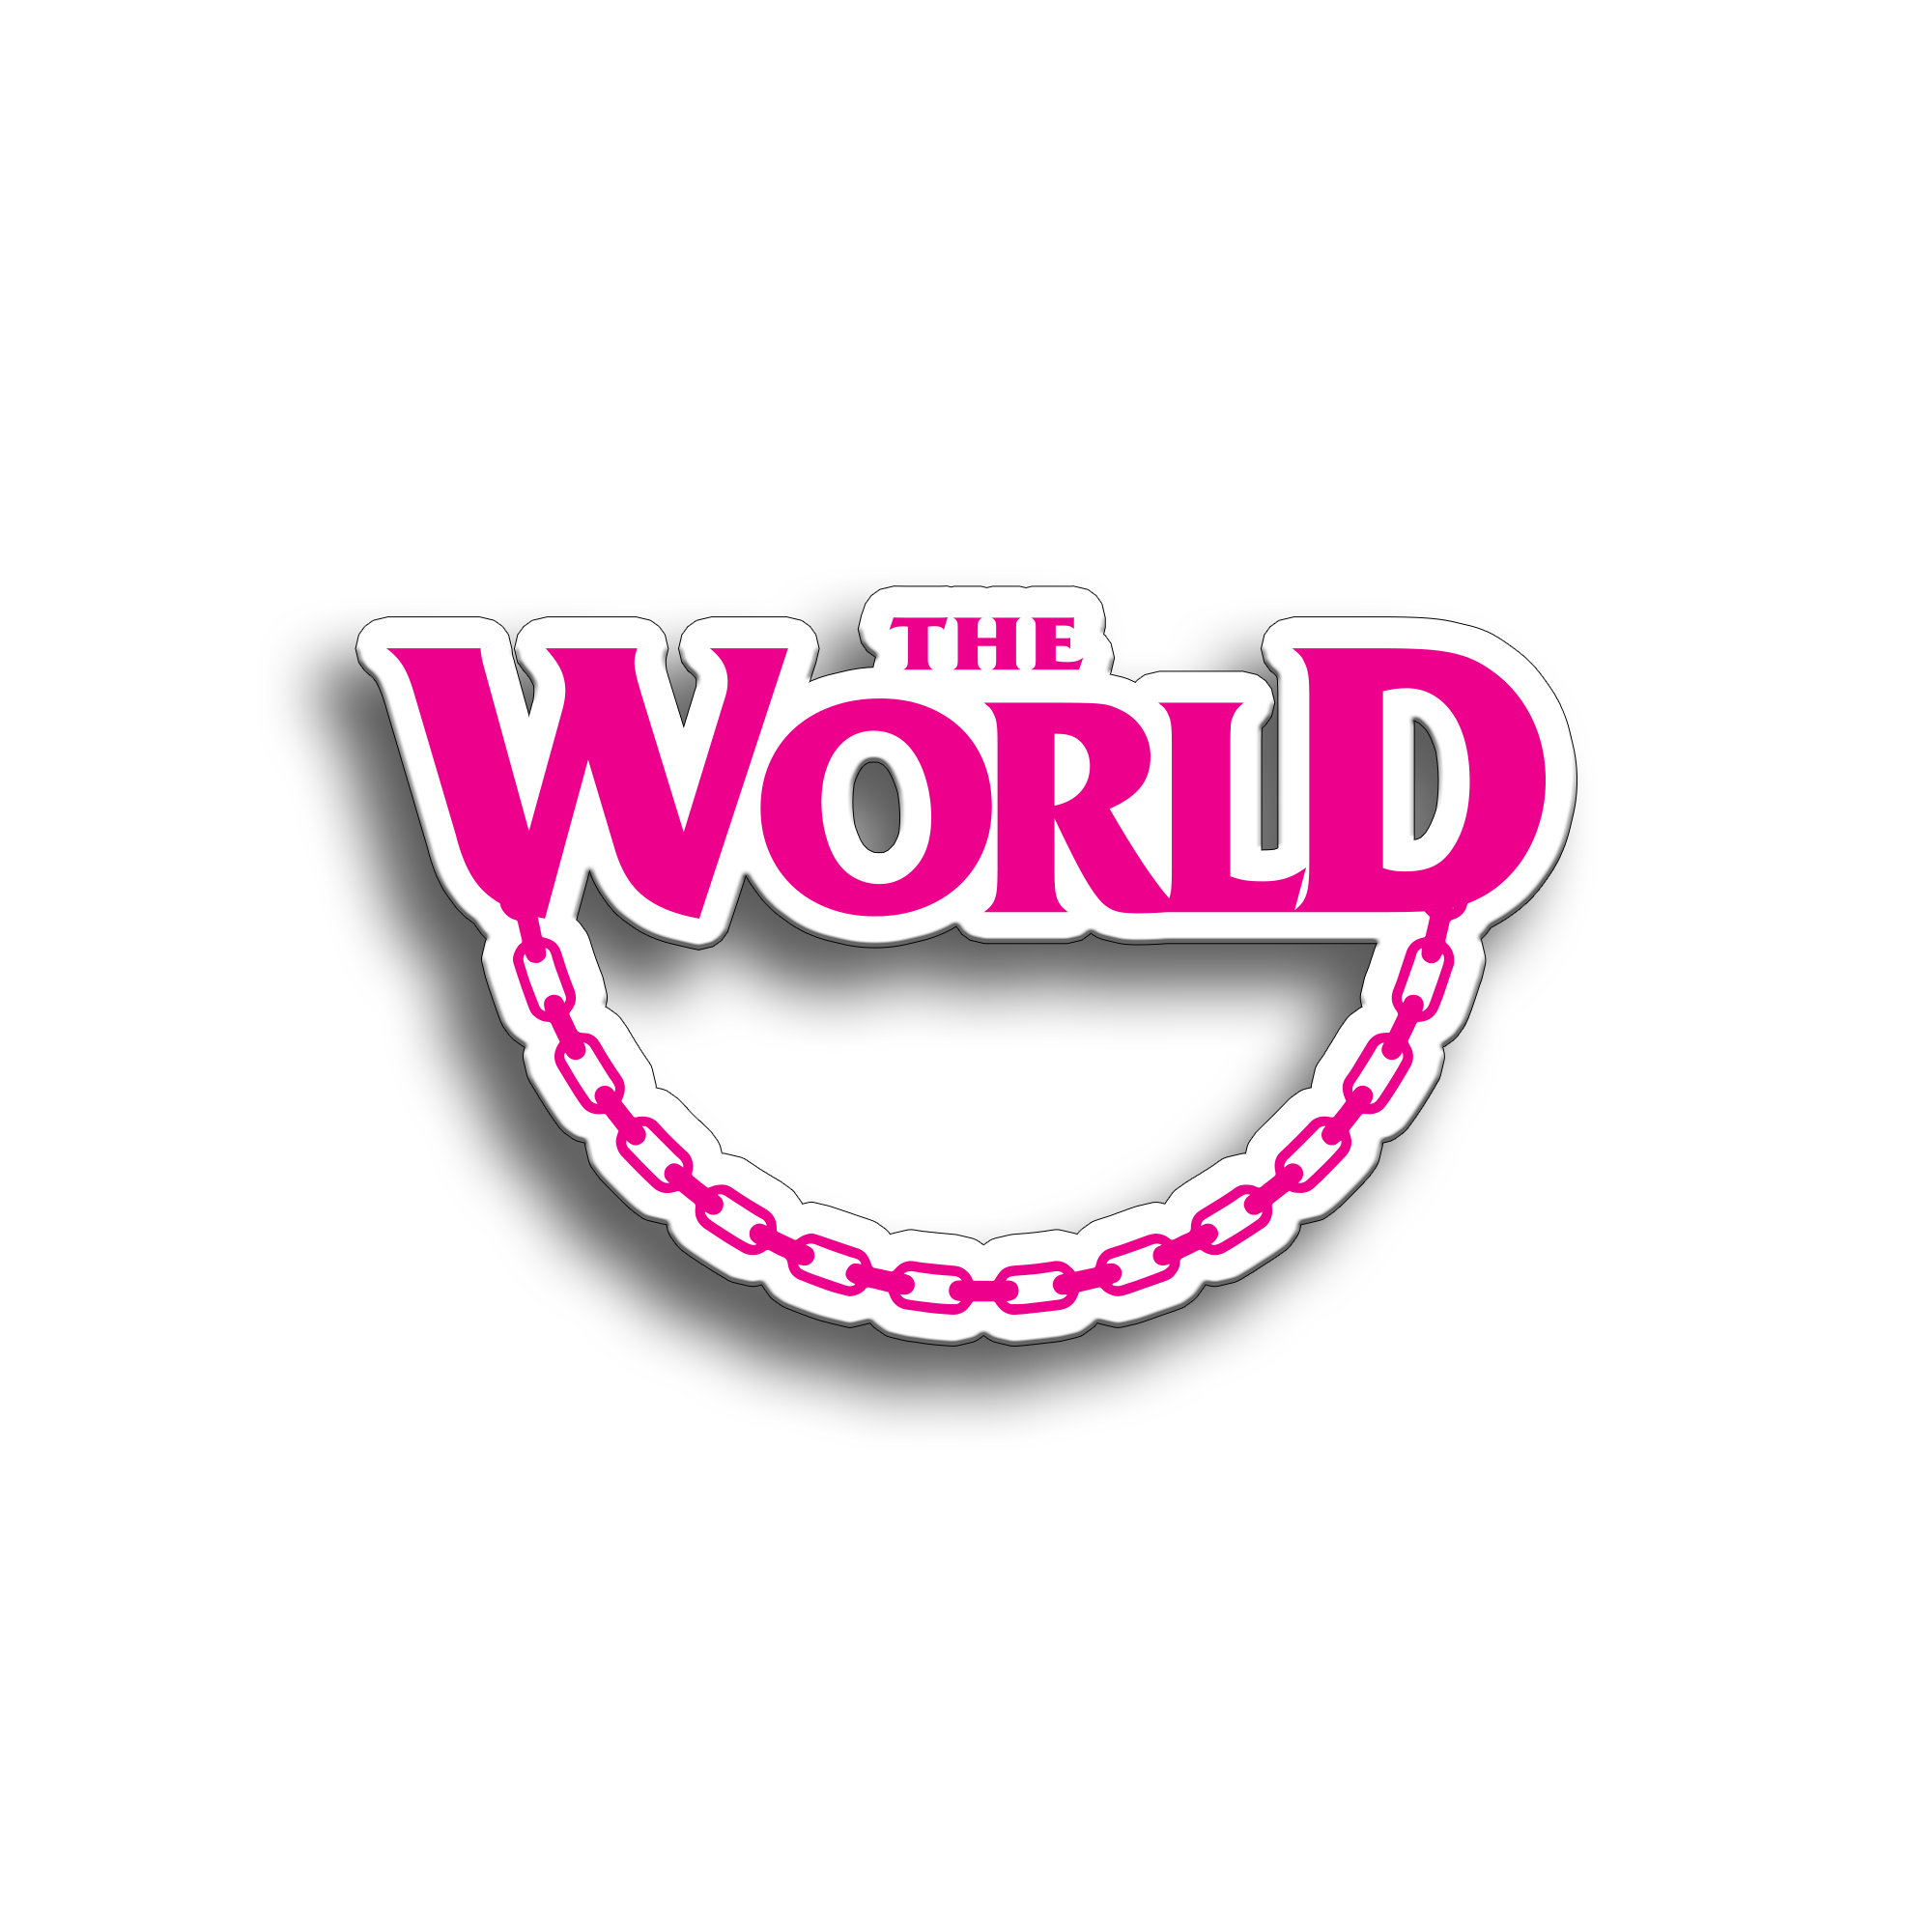 The World - Die Cut Magenta Sticker